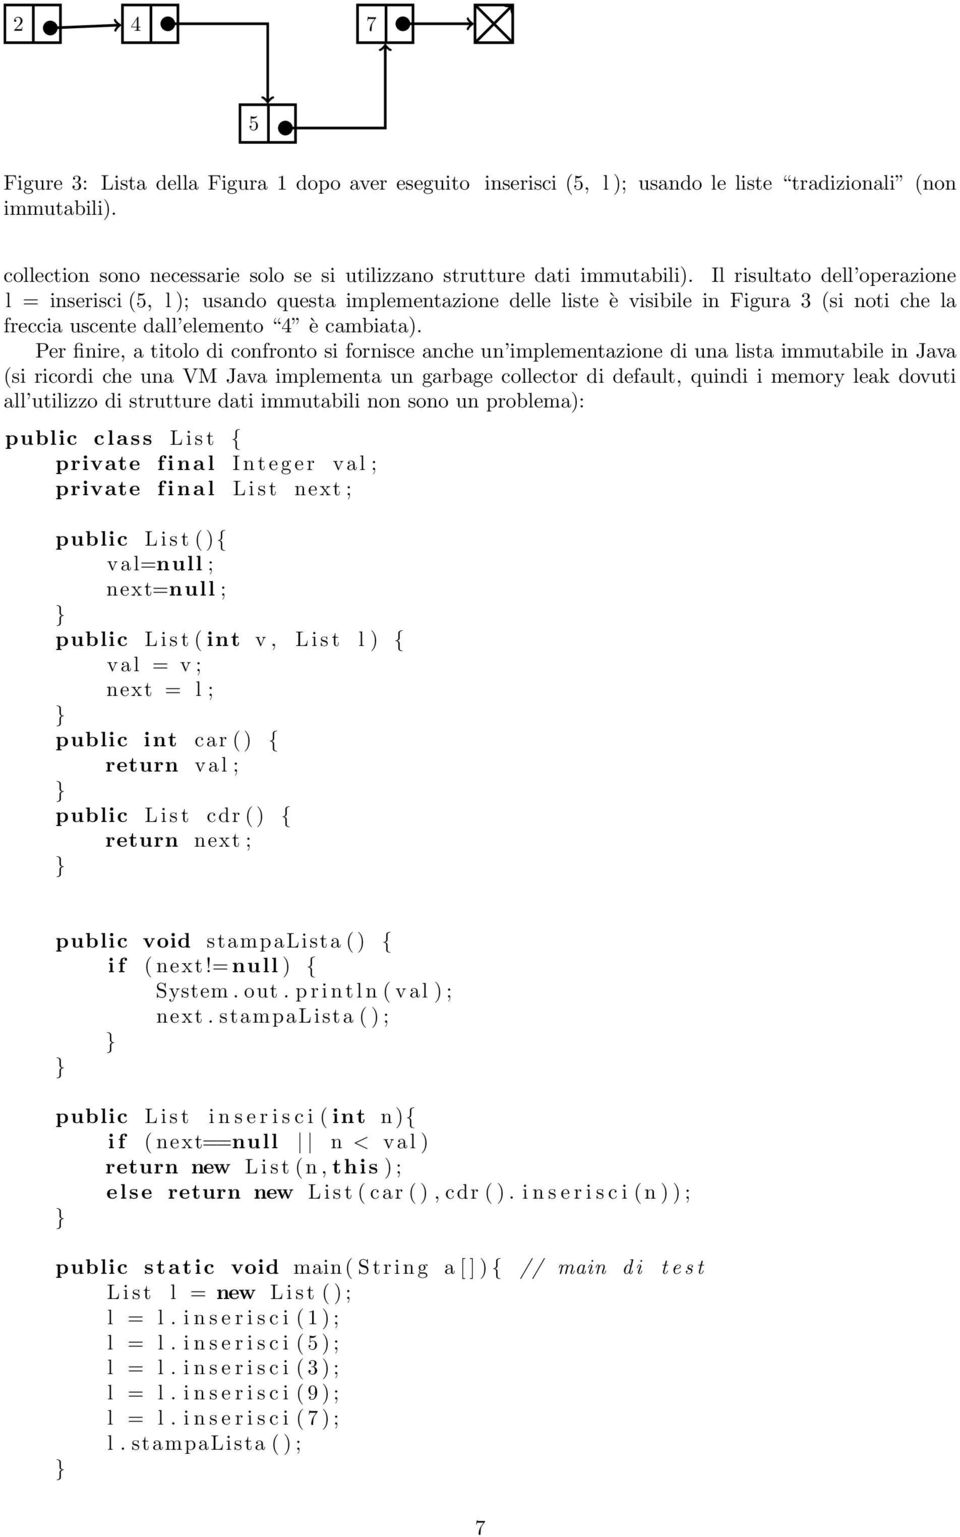 Per finire, a titolo di confronto si fornisce anche un implementazione di una lista immutabile in Java (si ricordi che una VM Java implementa un garbage collector di default, quindi i memory leak